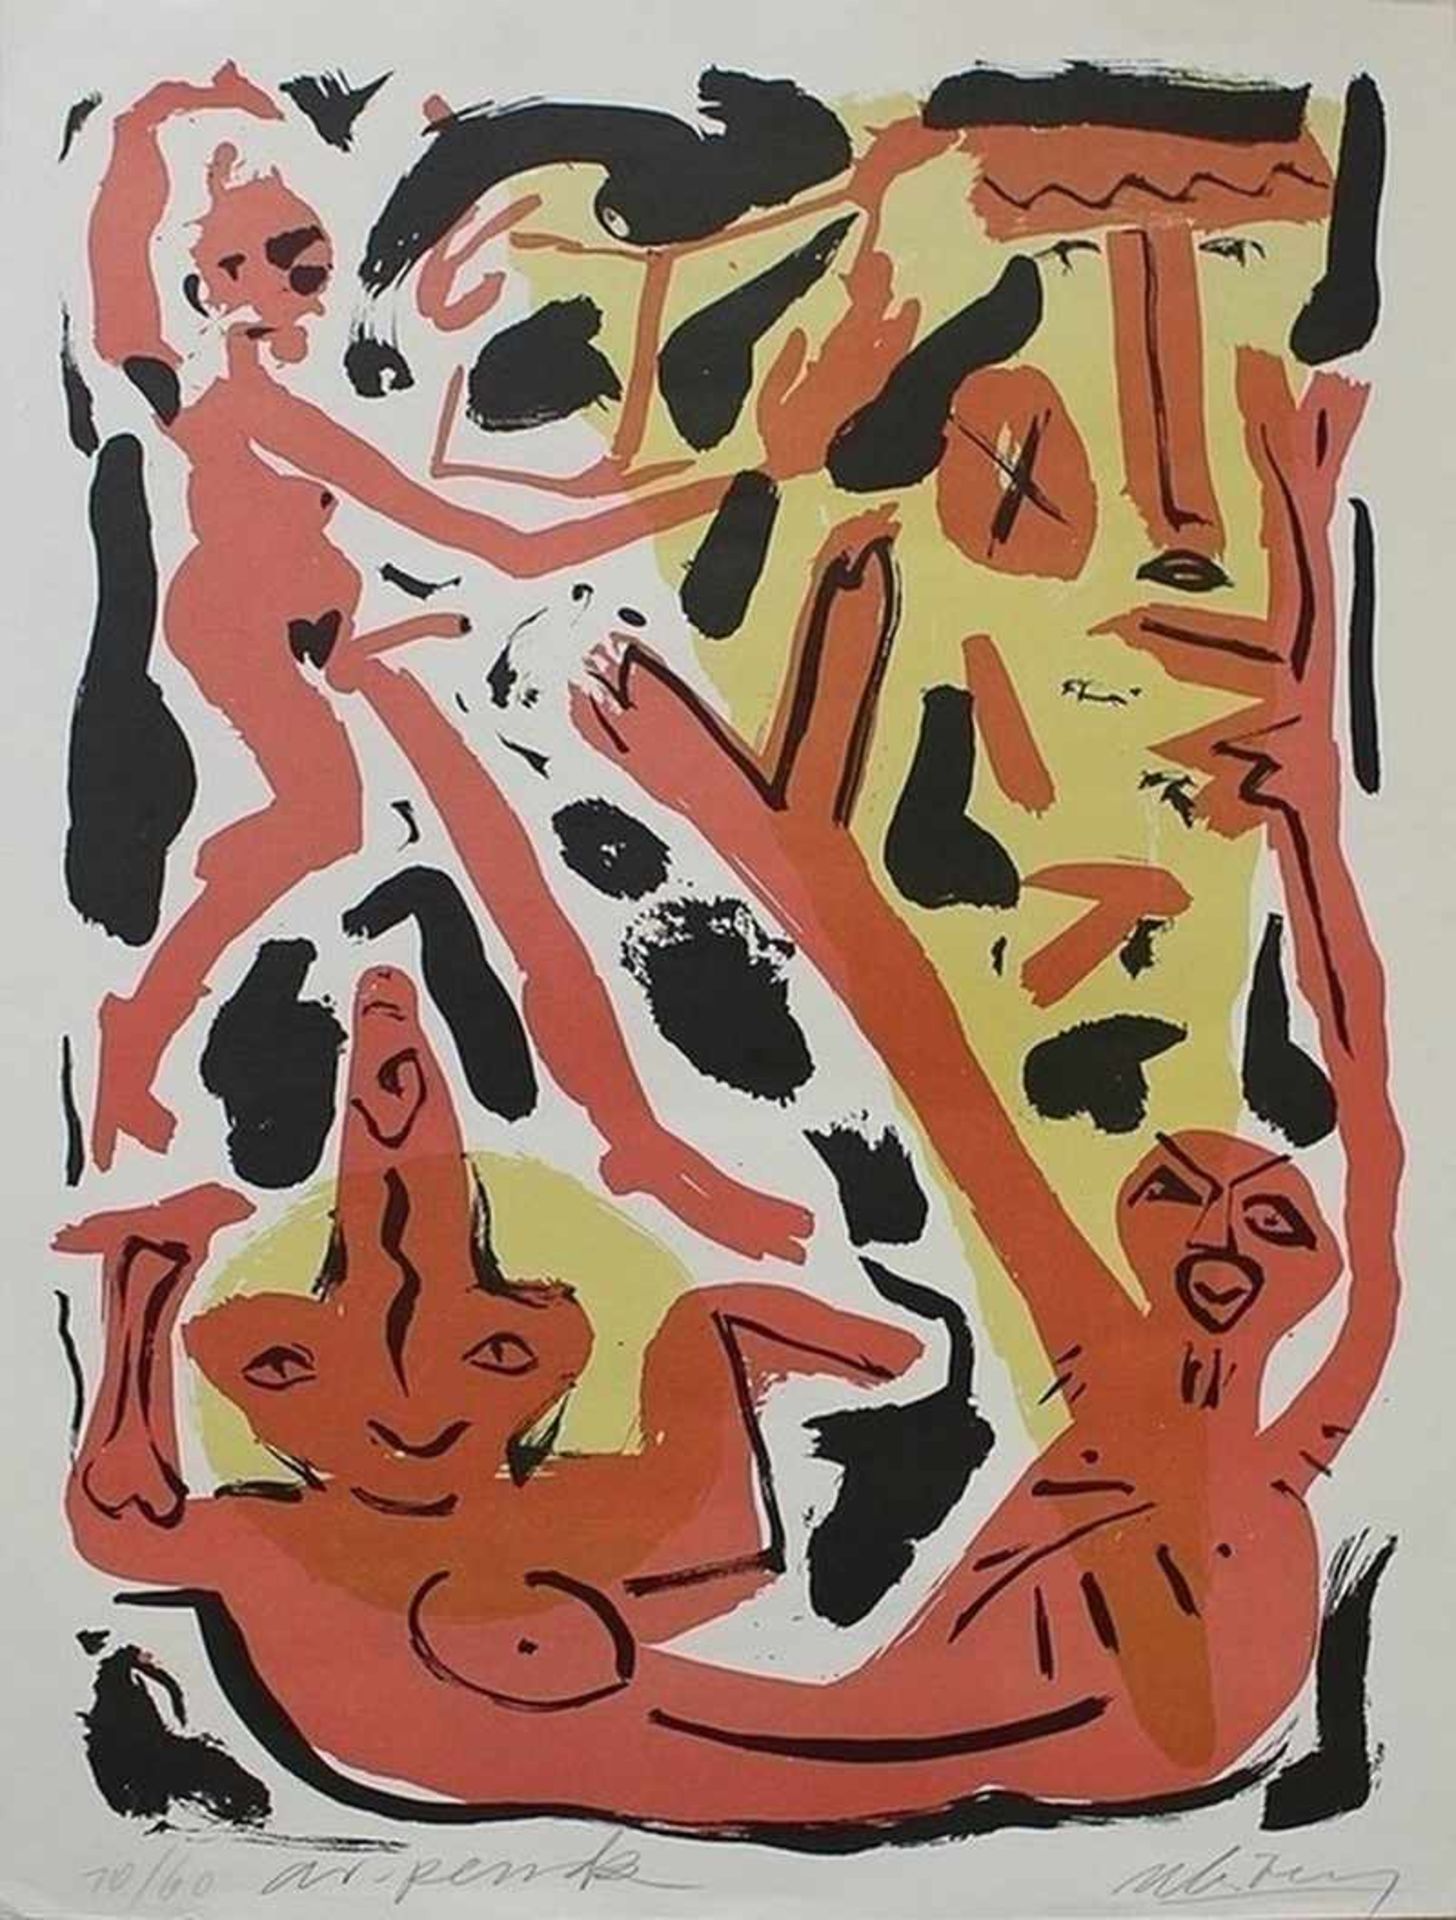 Penck, A.R. "Abstrakte Komposition", um 1990, Farblitho in Schwarz/Gelb/Rot, li. un. num. 10/60 u.